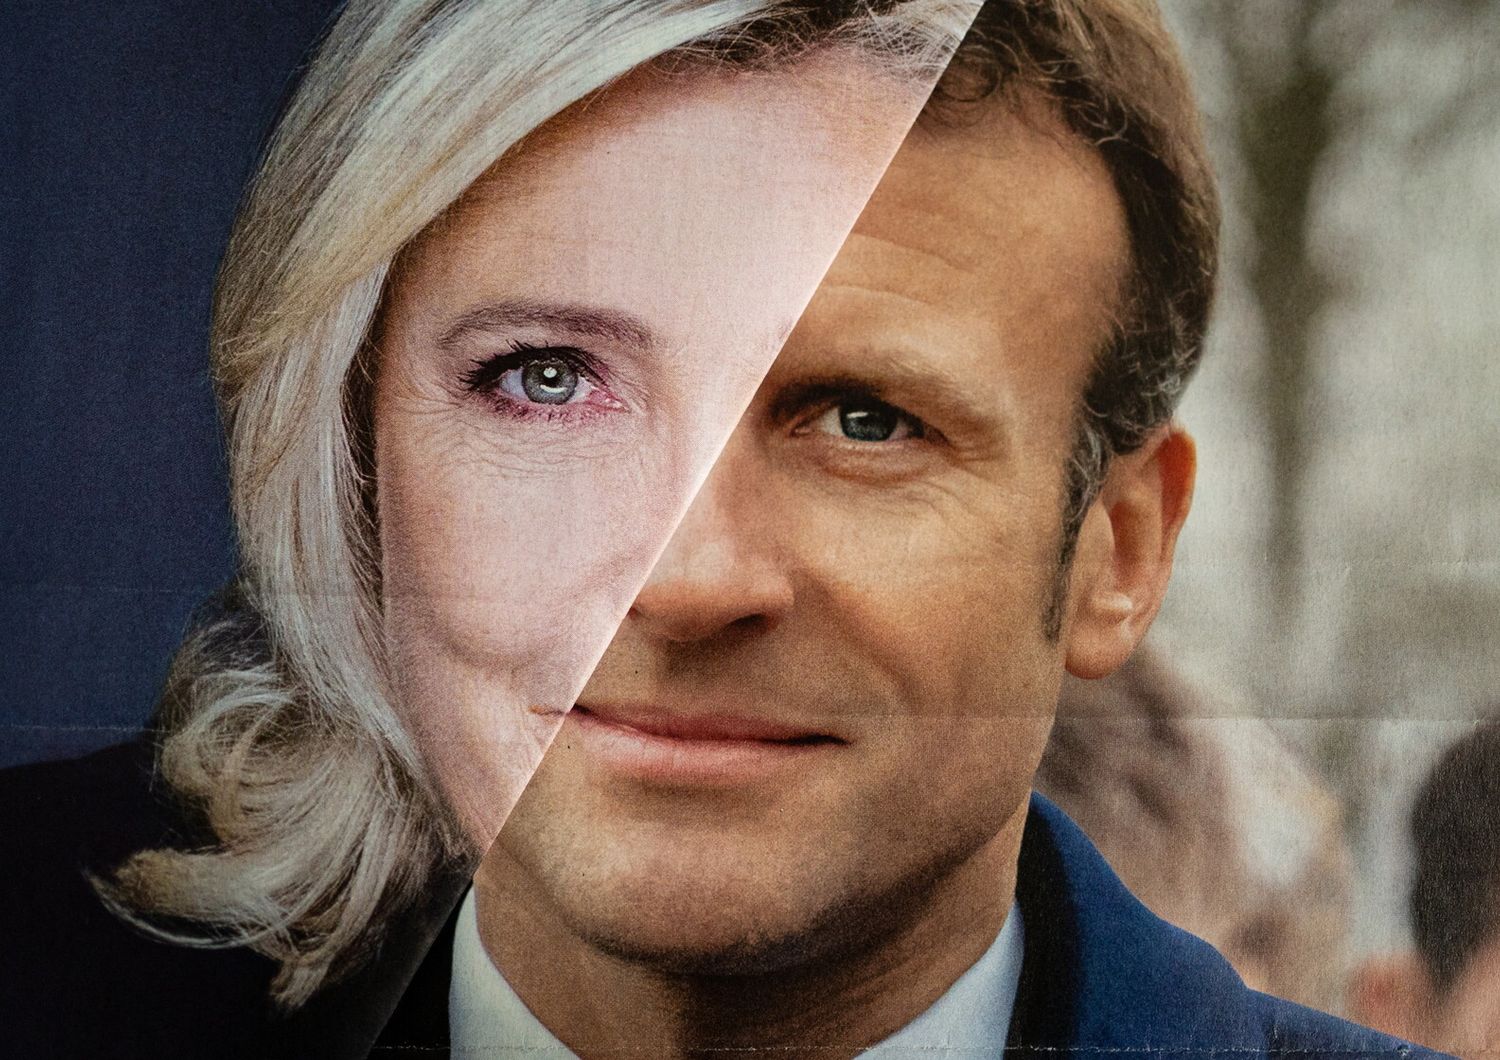 Le Pen-Macron, fotomontaggio Afp